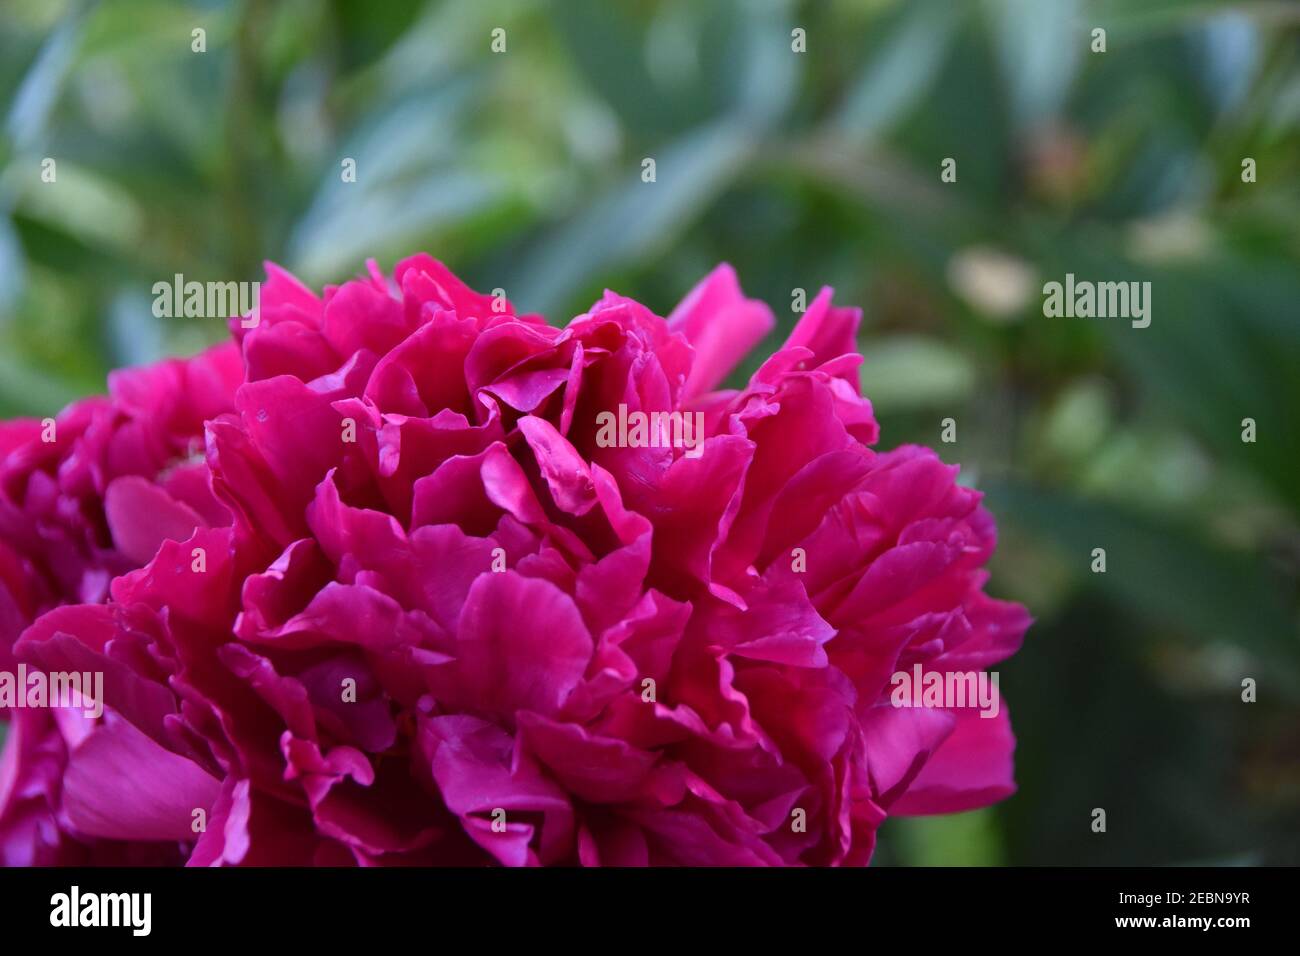 Nahaufnahme der rosa Pfingstrose Blume. Unscharfer Hintergrund. Speicherplatz kopieren. Stockfoto